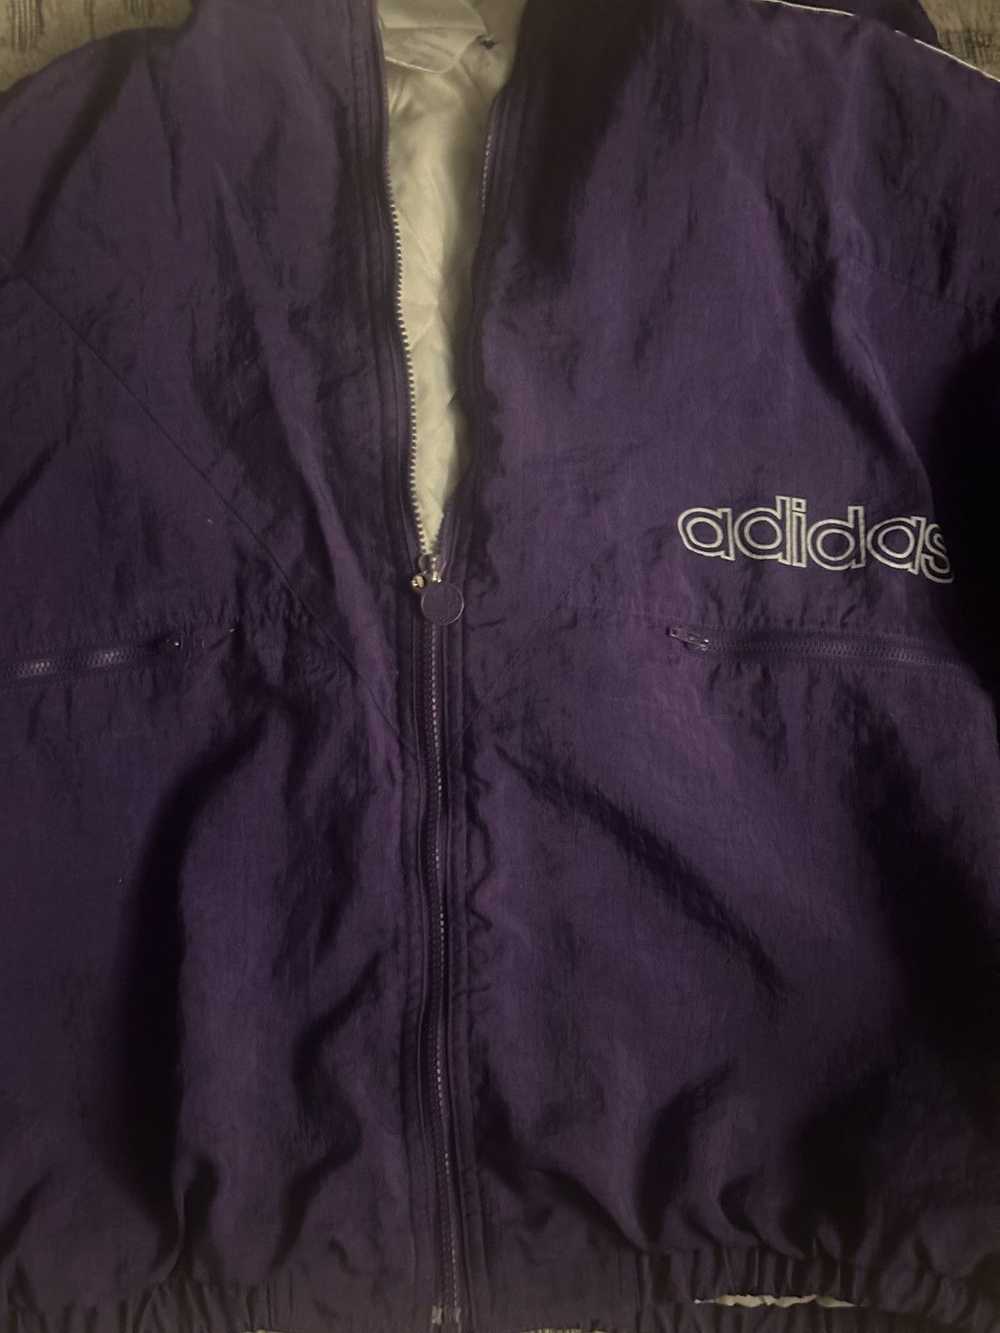 Adidas Vintage 90’s Adidas purple Puffy Jacket 90s - image 3